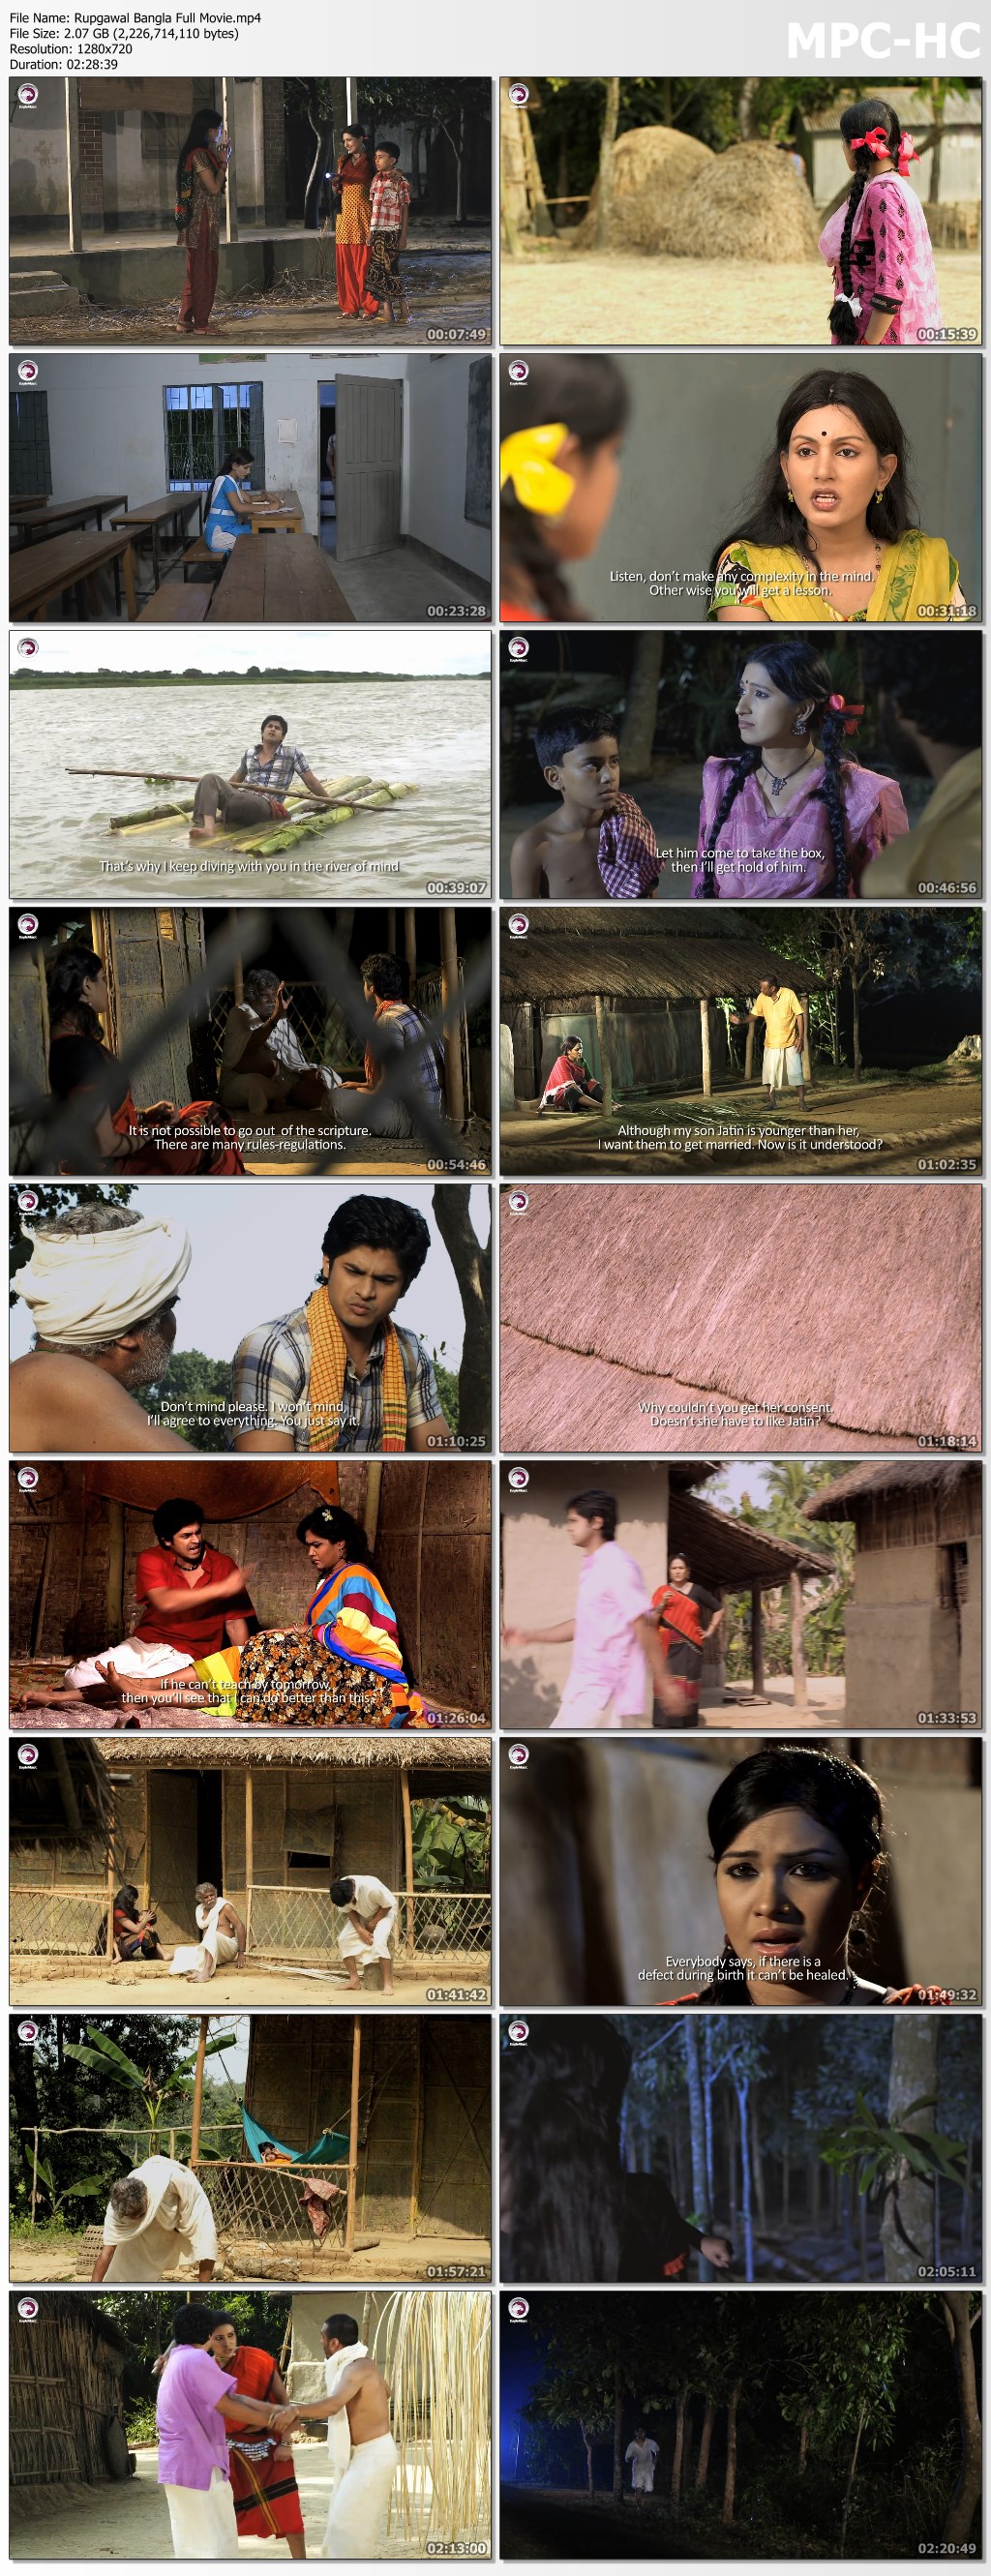 Rupgawal Bangla Full Movie.mp4 thumbs